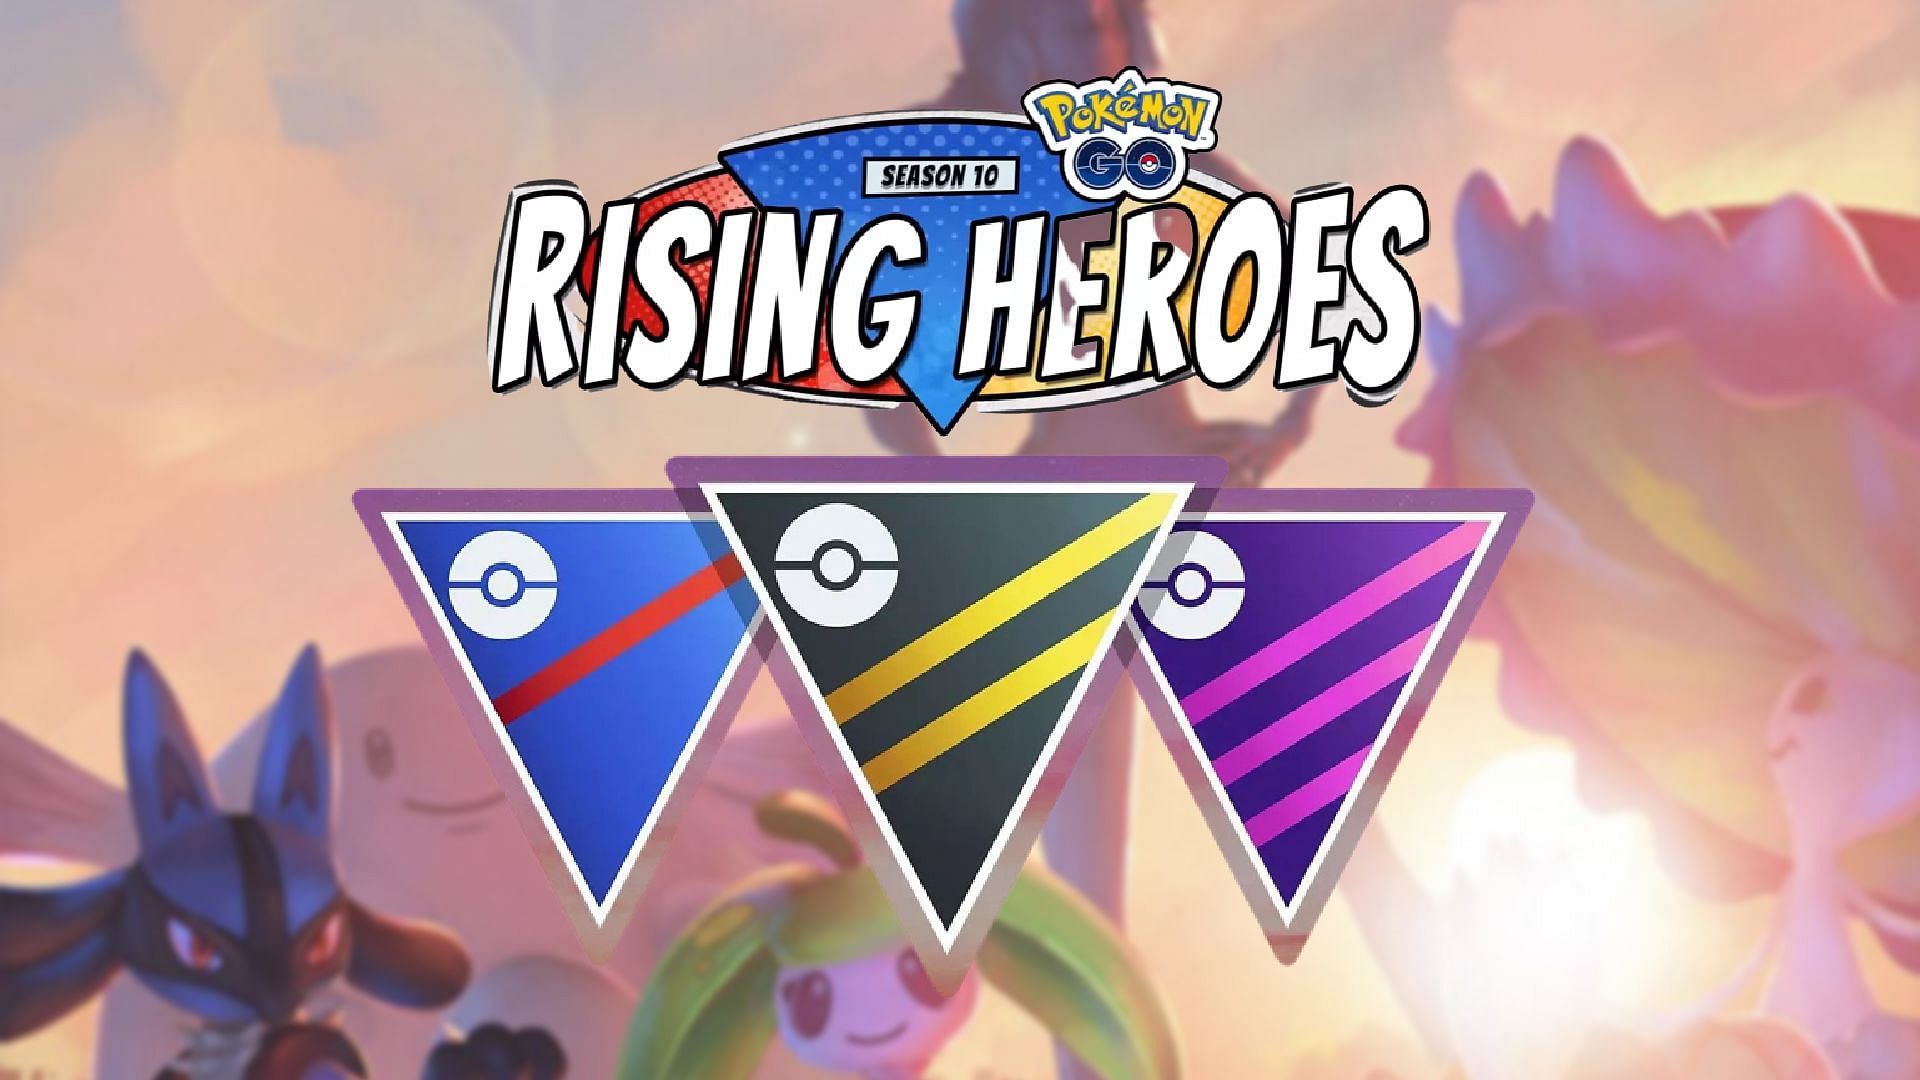 Season 10 Rising Heroes GO Battle League is here (Image via Pokemon GO)